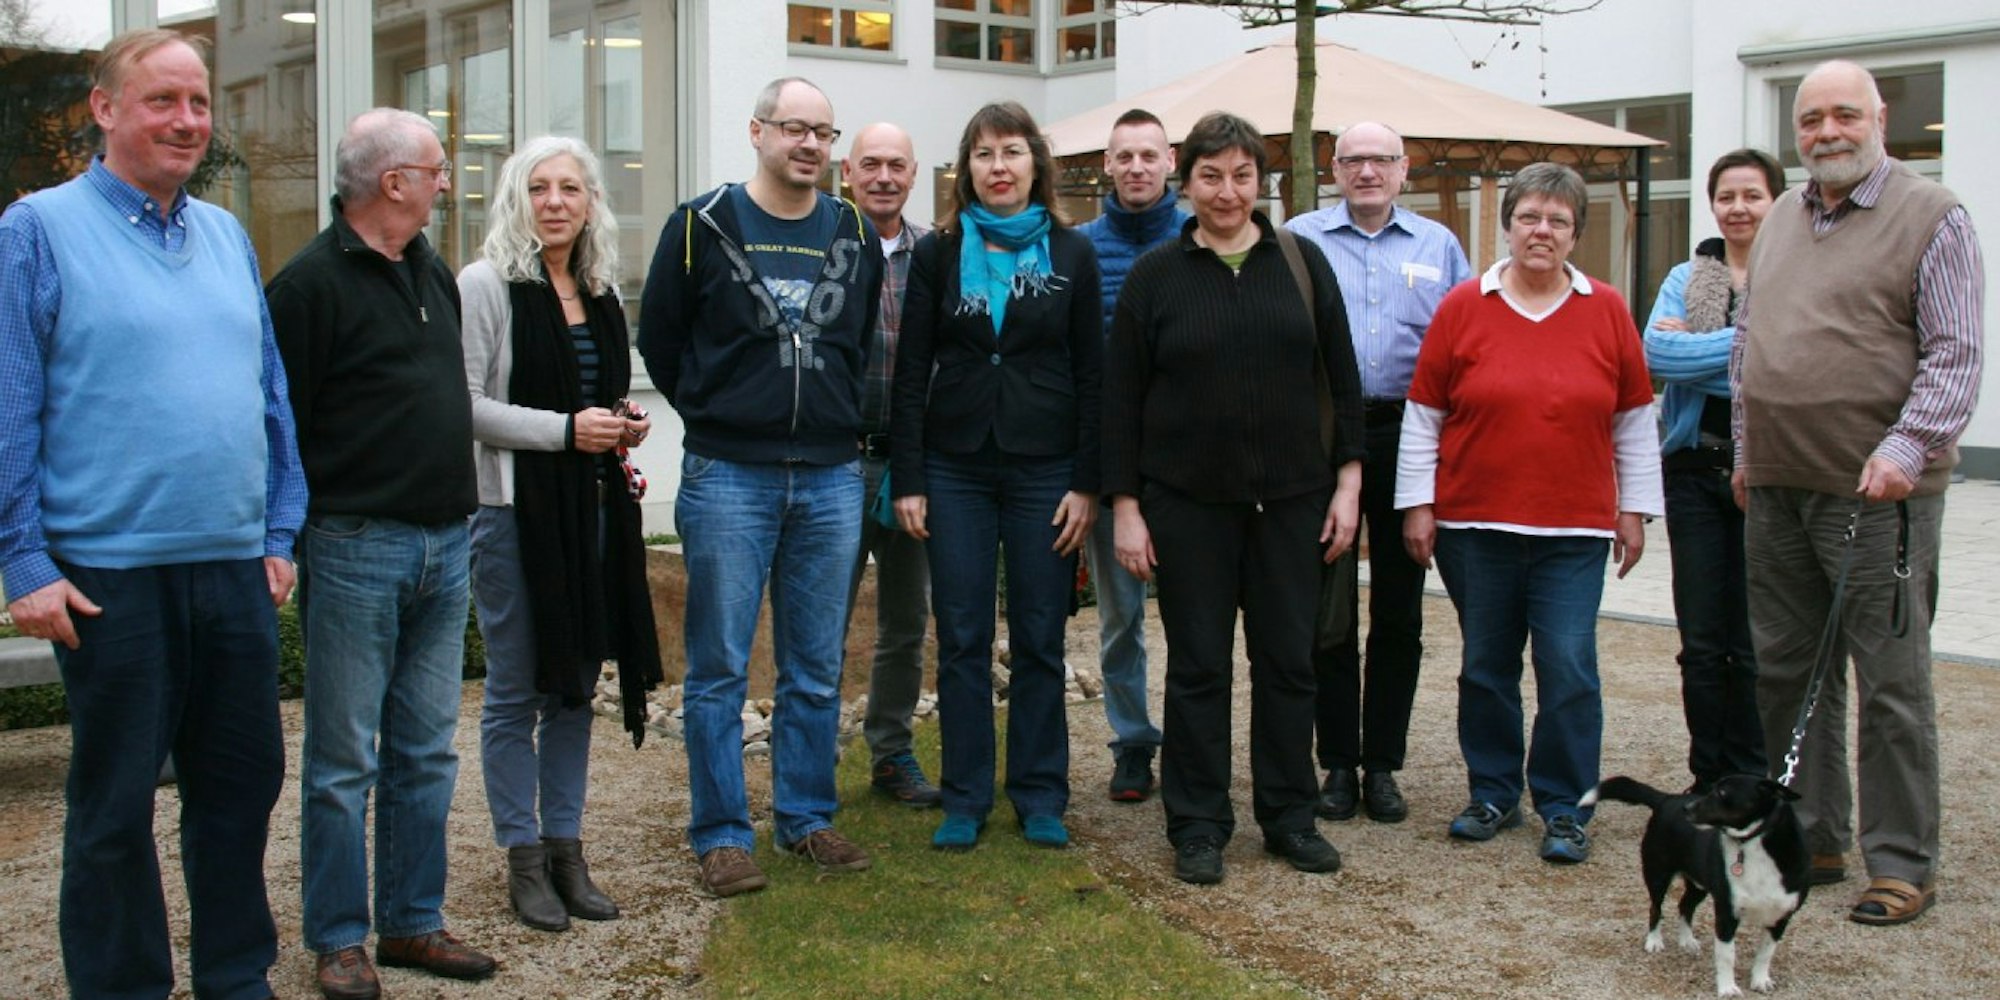 Die Teilnehmer des Rundgangs im Hof des Seniorenzentrums der Arbeiterwohlfahrt am Severinswall.